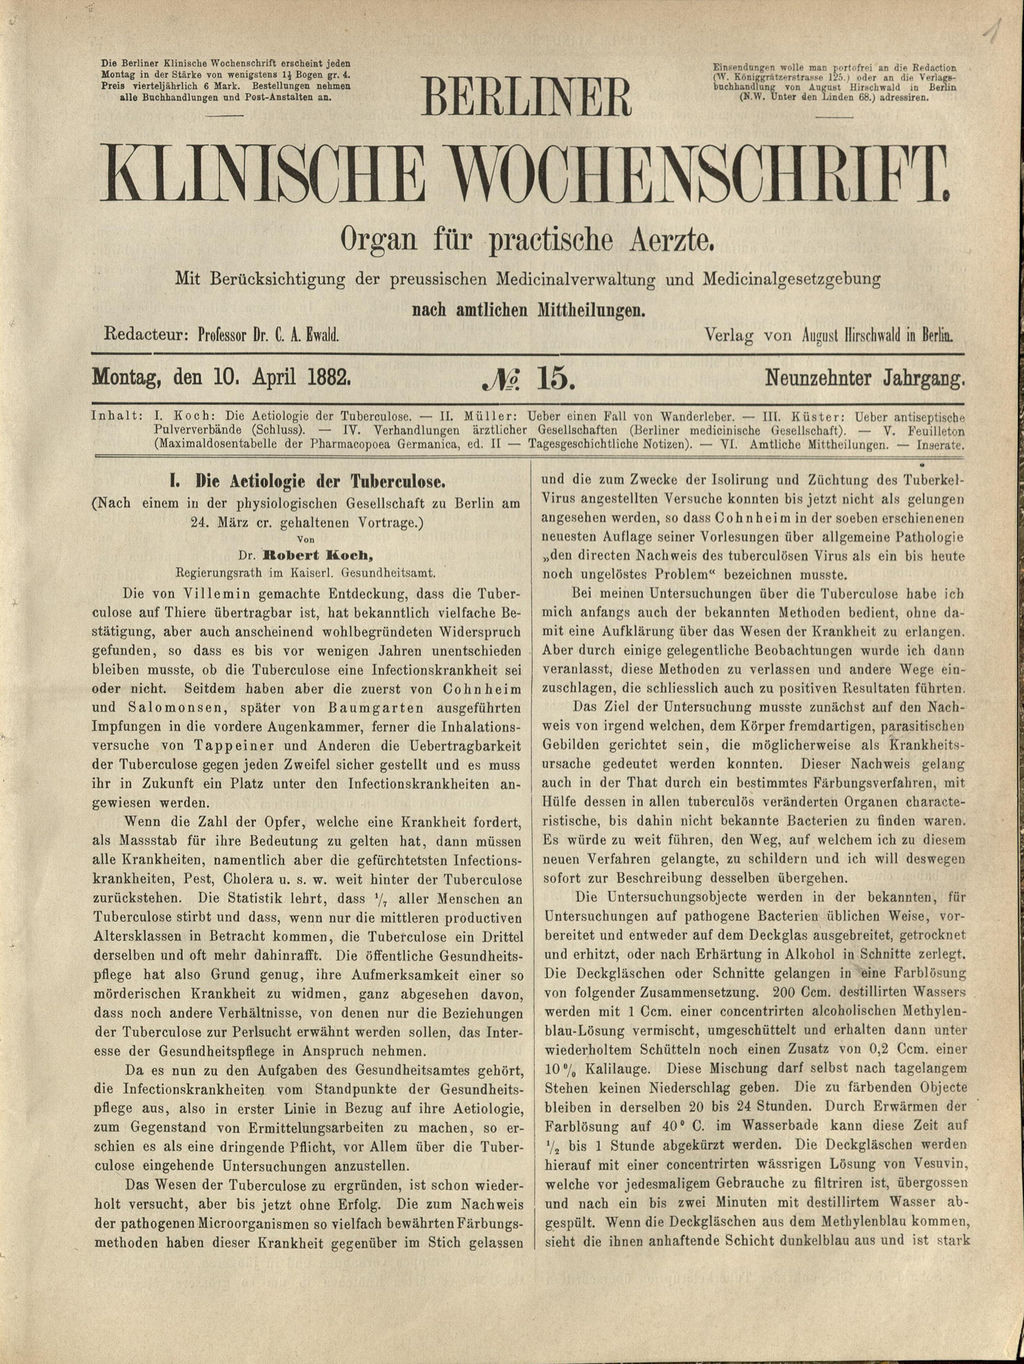 Zeitschrift: Koch, Robert, Die Aetiologie der Tuberculose, 1882